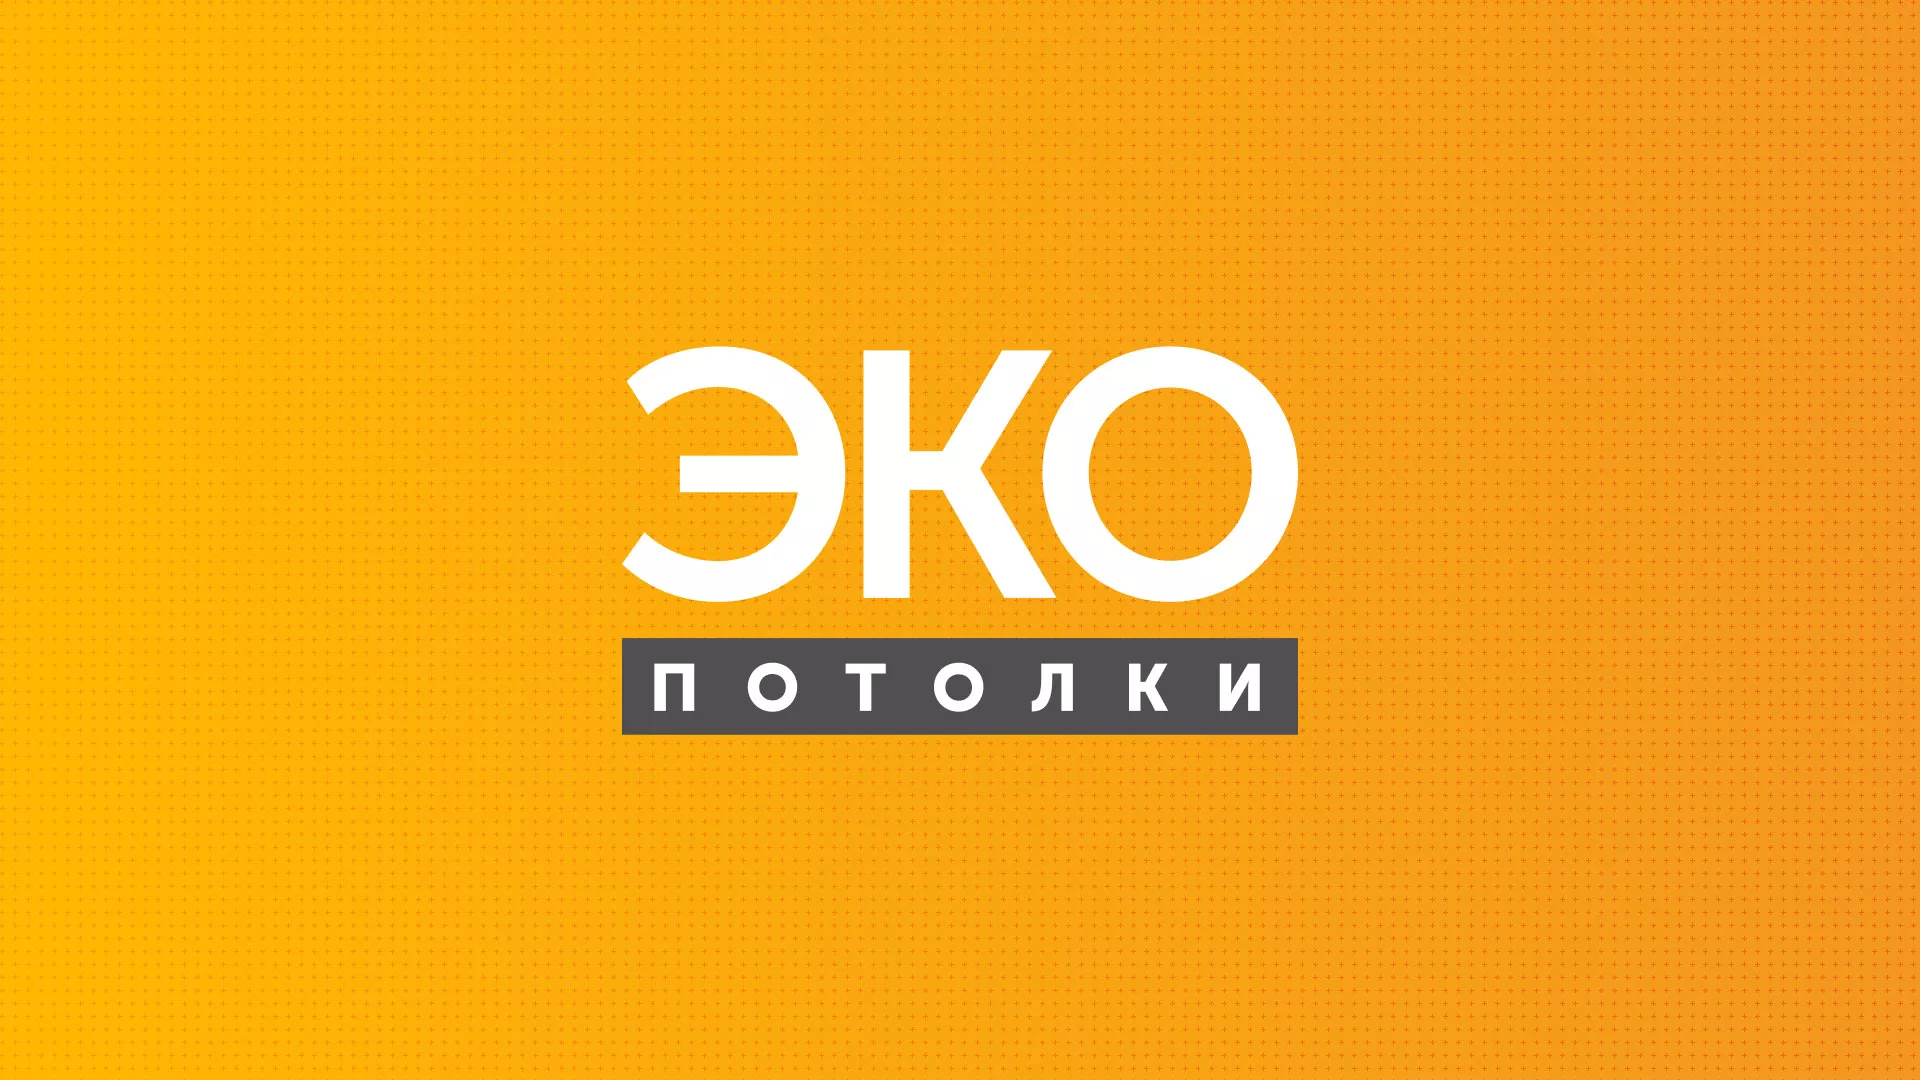 Разработка сайта по натяжным потолкам «Эко Потолки» в Новосибирске